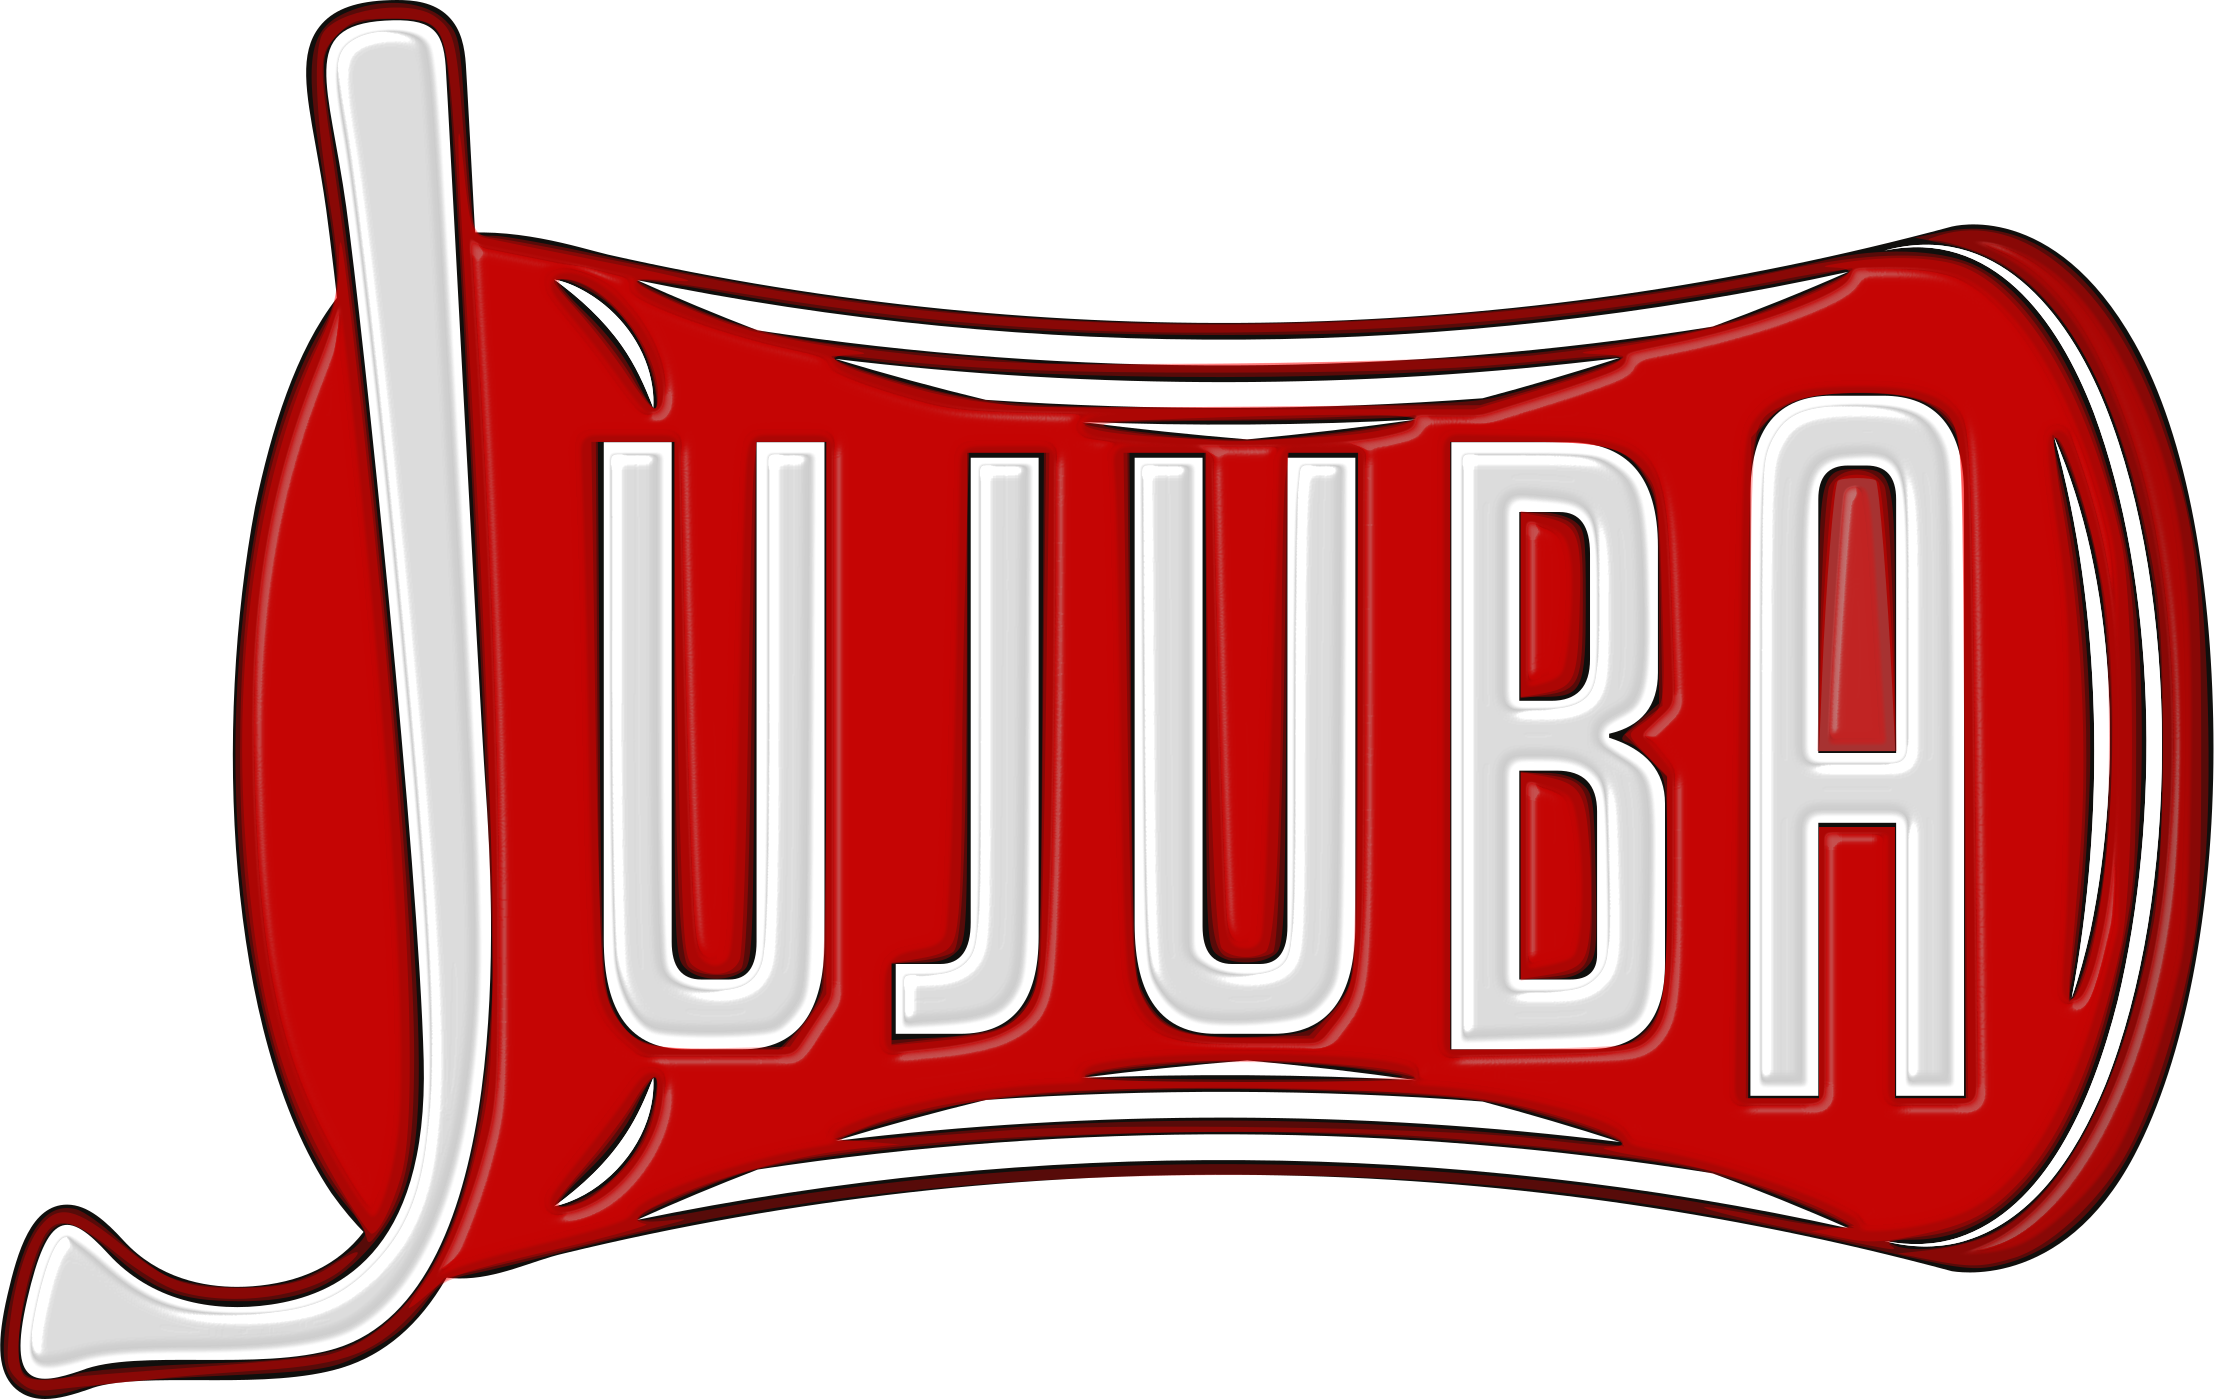 Jujuba